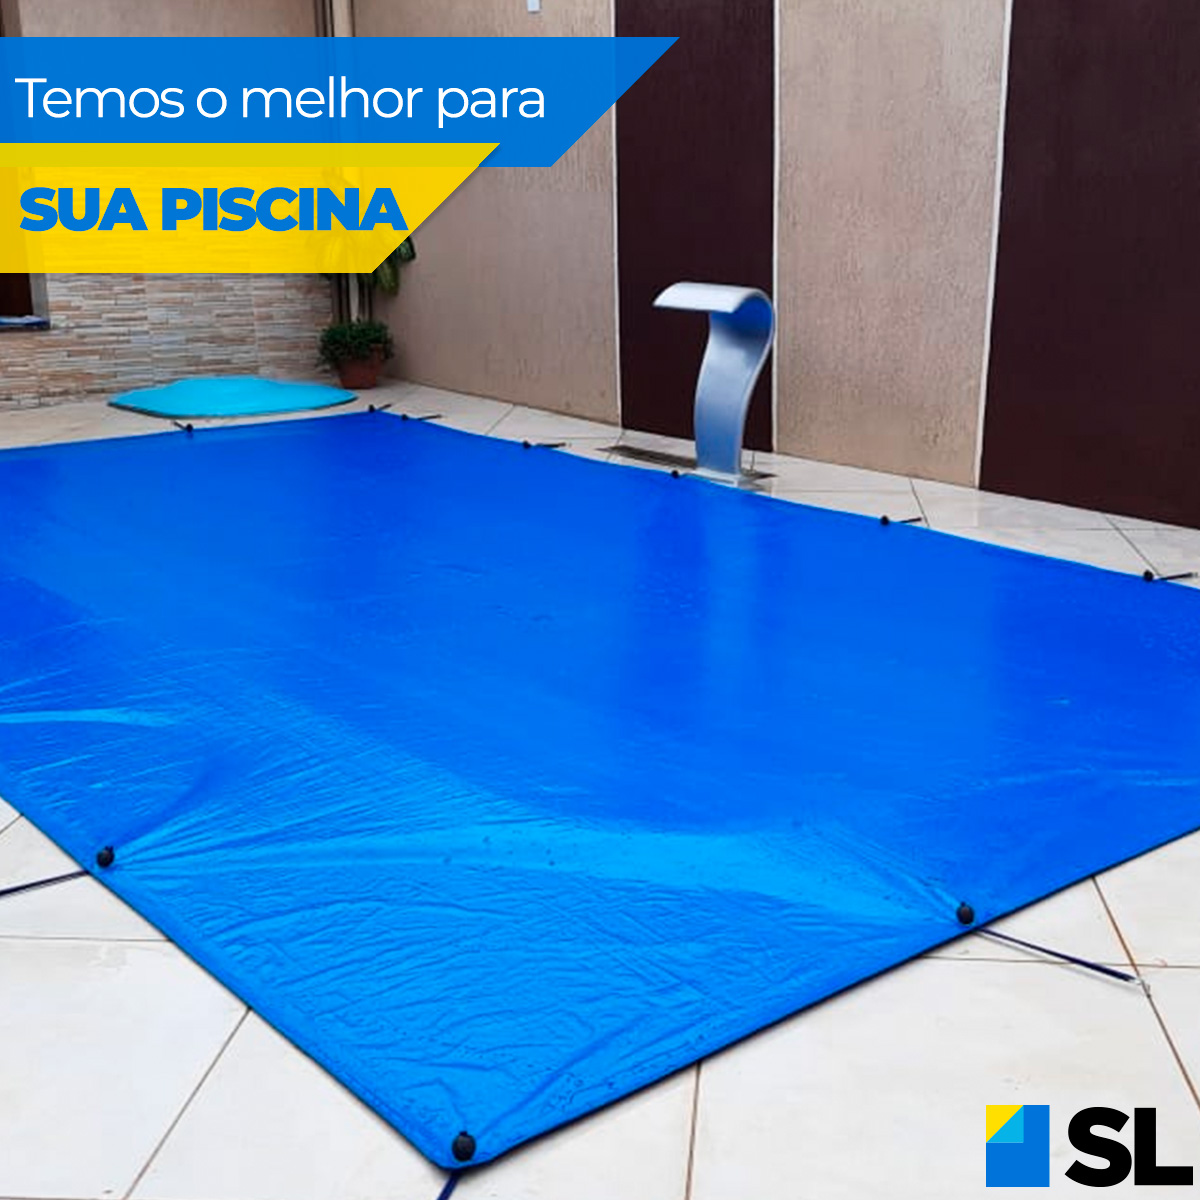 Capa para Piscina Azul 300 Micras - 2,5x2,5